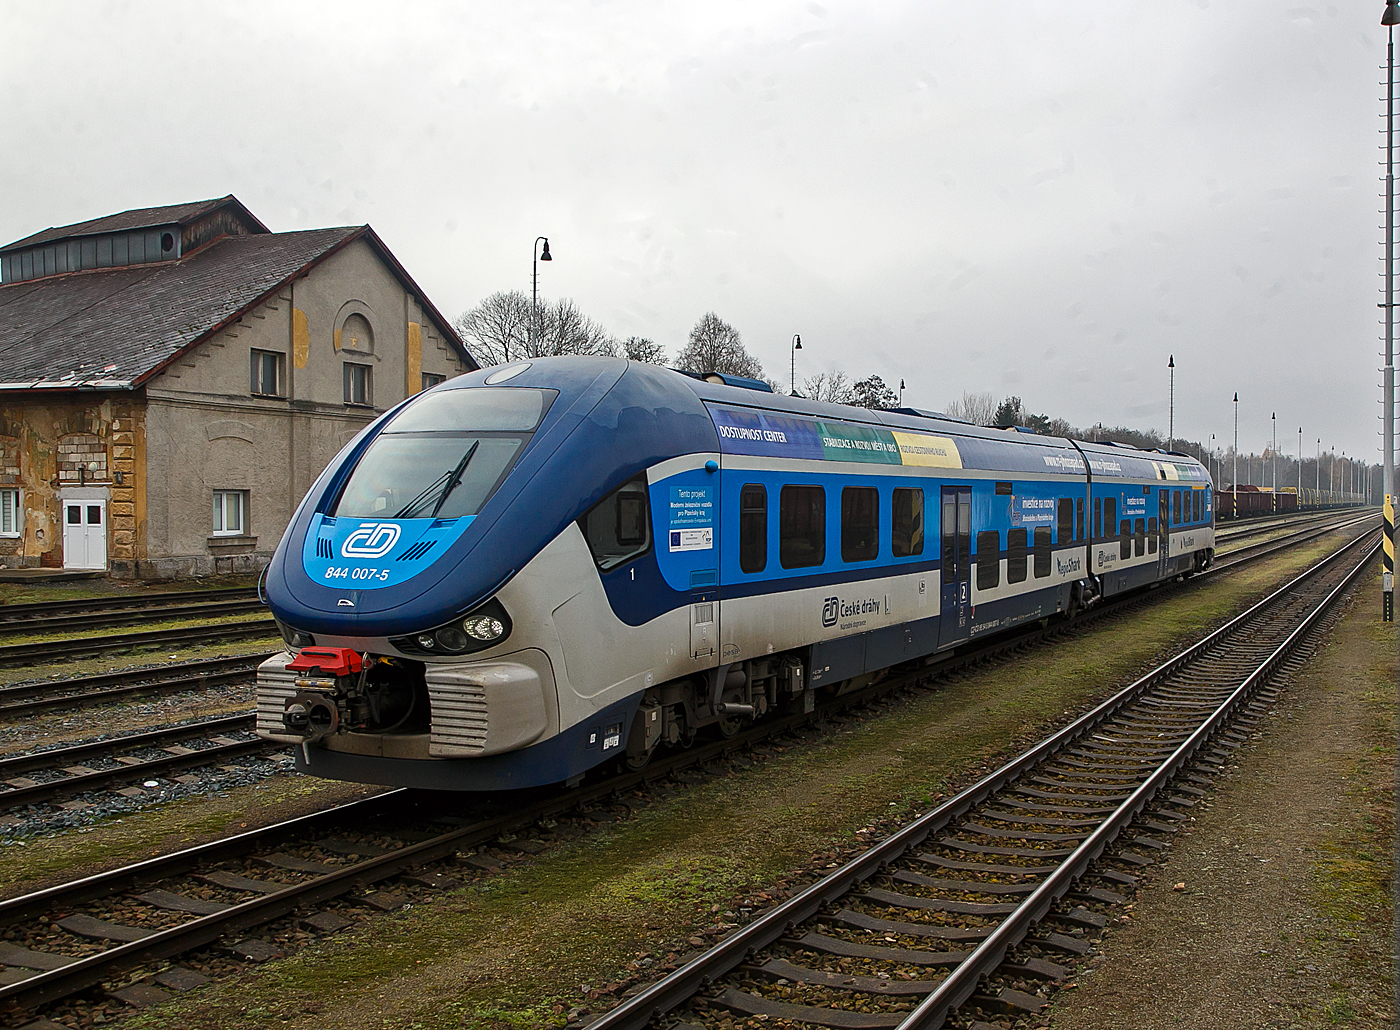 Der „RegioShark“  ČD 844 007-5 (CZ- ČD 95 54 5 844 007-5), ein Dieseltriebzug vom Typ PESA LINK II (Projektname DMU 120), steht am 22.11.2022 beim Bahnhof Domalice (Taus).

Die Fahrzeuge setzen sich aus zwei weitgehend identischen Hlften zusammen, die ber ein nicht angetriebenes Jakobsdrehgestell verbunden sind. Angetrieben werden die beiden ueren Drehgestelle ber zwei MTU-Powerpacks, vom Typ MTU 6H 1800 R85 mit je 390 kW Leistung, die unter dem Wagenfuboden angeordnet sind. Die Leistungsbertragung erfolgt jeweils mittels hydromechanischen Getriebe auf jeweils beide Achsen der Triebdrehgestelle. Bei Strecken mit Steigung hrt man im Innenraum sehr stark wie die Motoren arbeiten mssen, ansonsten sind die Fahrzeuge aber sehr Laufruhig.

Zwischen den Drehgestellen ist der Fahrgastraum niederflurig ausgefhrt, sodass an Bahnsteigen mit einer Hhe von 550 Millimetern ber Schienenoberkante ein barrierefreier Einstieg gewhrleistet ist. Der Fahrgastraum ist klimatisiert. 

TECHNISCHE DATEN:
Anzahl: 31 Hersteller:  PESA, Bydgoszcz, Polen
Spurweite:  1.435 mm (Normalspur)
Achsformel: B'2'B'
Lnge ber Kupplung:  43.730 mm
Achsstand im Drehgestell:  2.100 mm
Hhe:  4.185 mm
Breite: 2.900 mm
Dienstgewicht: 84,4 t
Hchstgeschwindigkeit: 120 km/h
Motoren: 2 Stck MTU Unterflur-Powerpack  6H 1800 R85L
Installierte Leistung: 2 x 390 kW
Leistungsbertragung: hydromechanisch (Voith-Diwa-Getriebe)  
Kupplungstyp: Scharfenberg
Sitzpltze: 120
